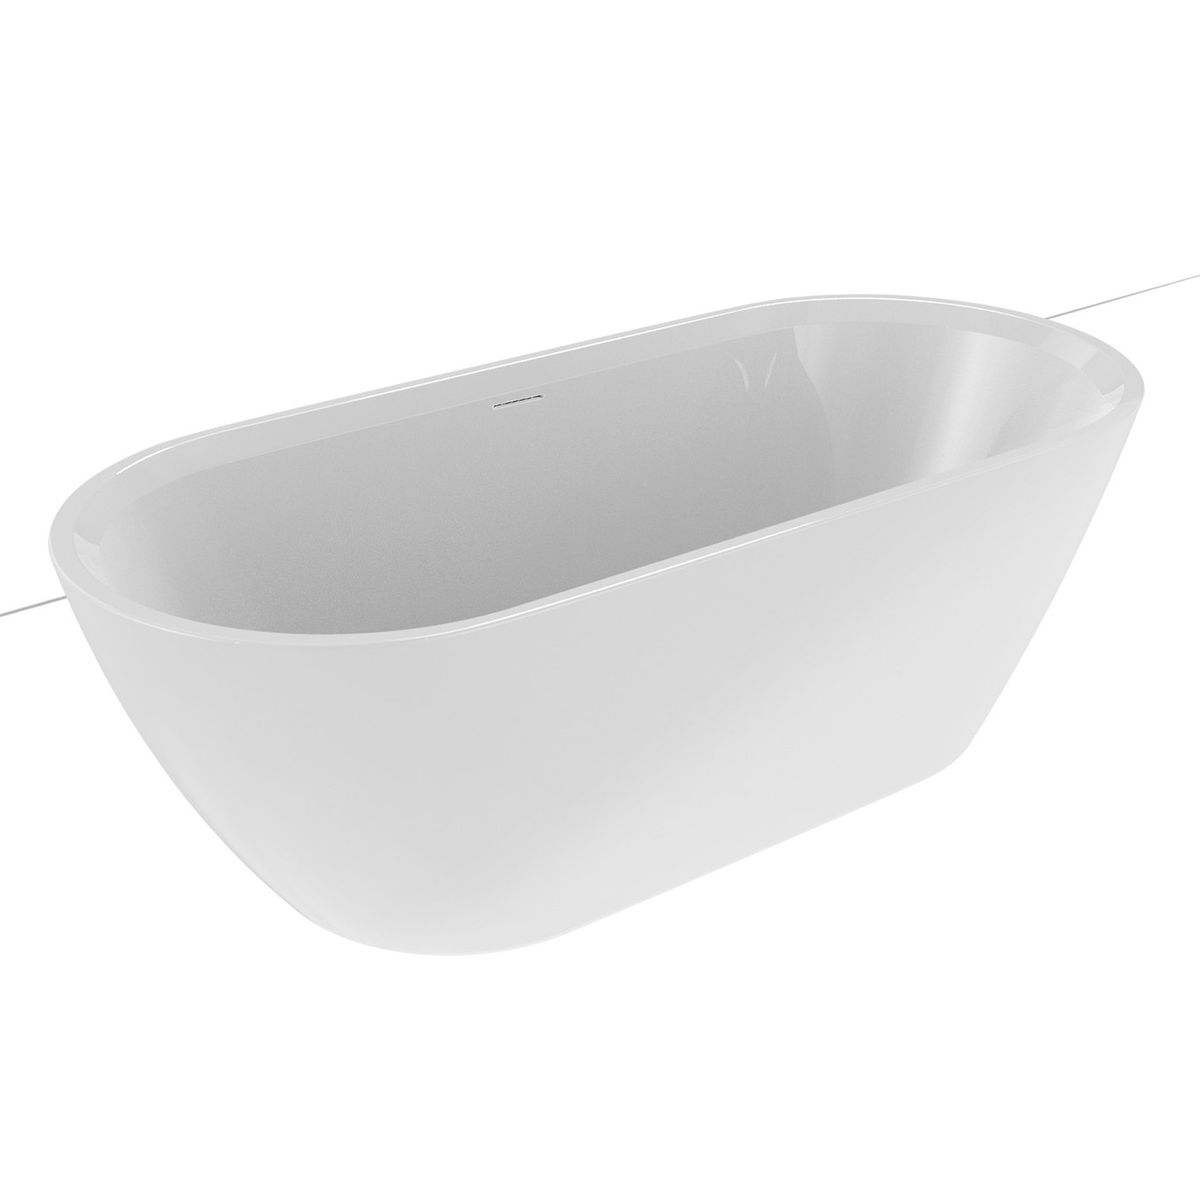 Akrilinė vonia Riho Inspire 180x80 cm, balta matinė, B085001105